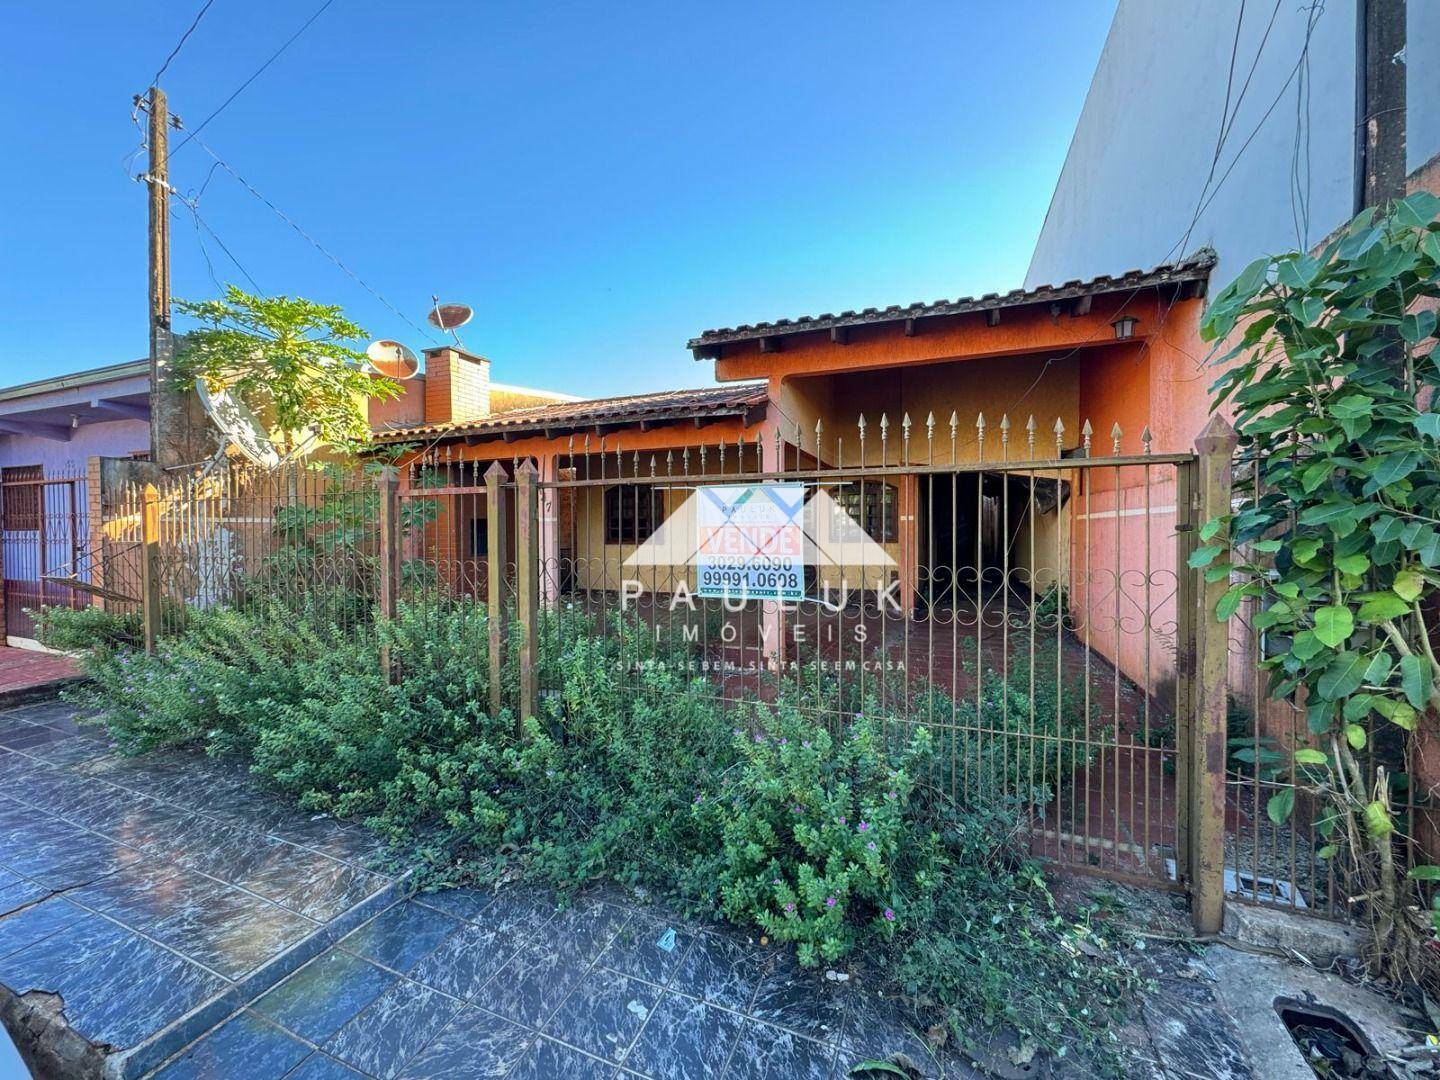 Casa com 3 Dormitórios Sendo 1 Suíte à venda Por R$ 250.000 - Conjunto Residencial Sol de Maio - Foz | PAULUK IMÓVEIS | Portal OBusca